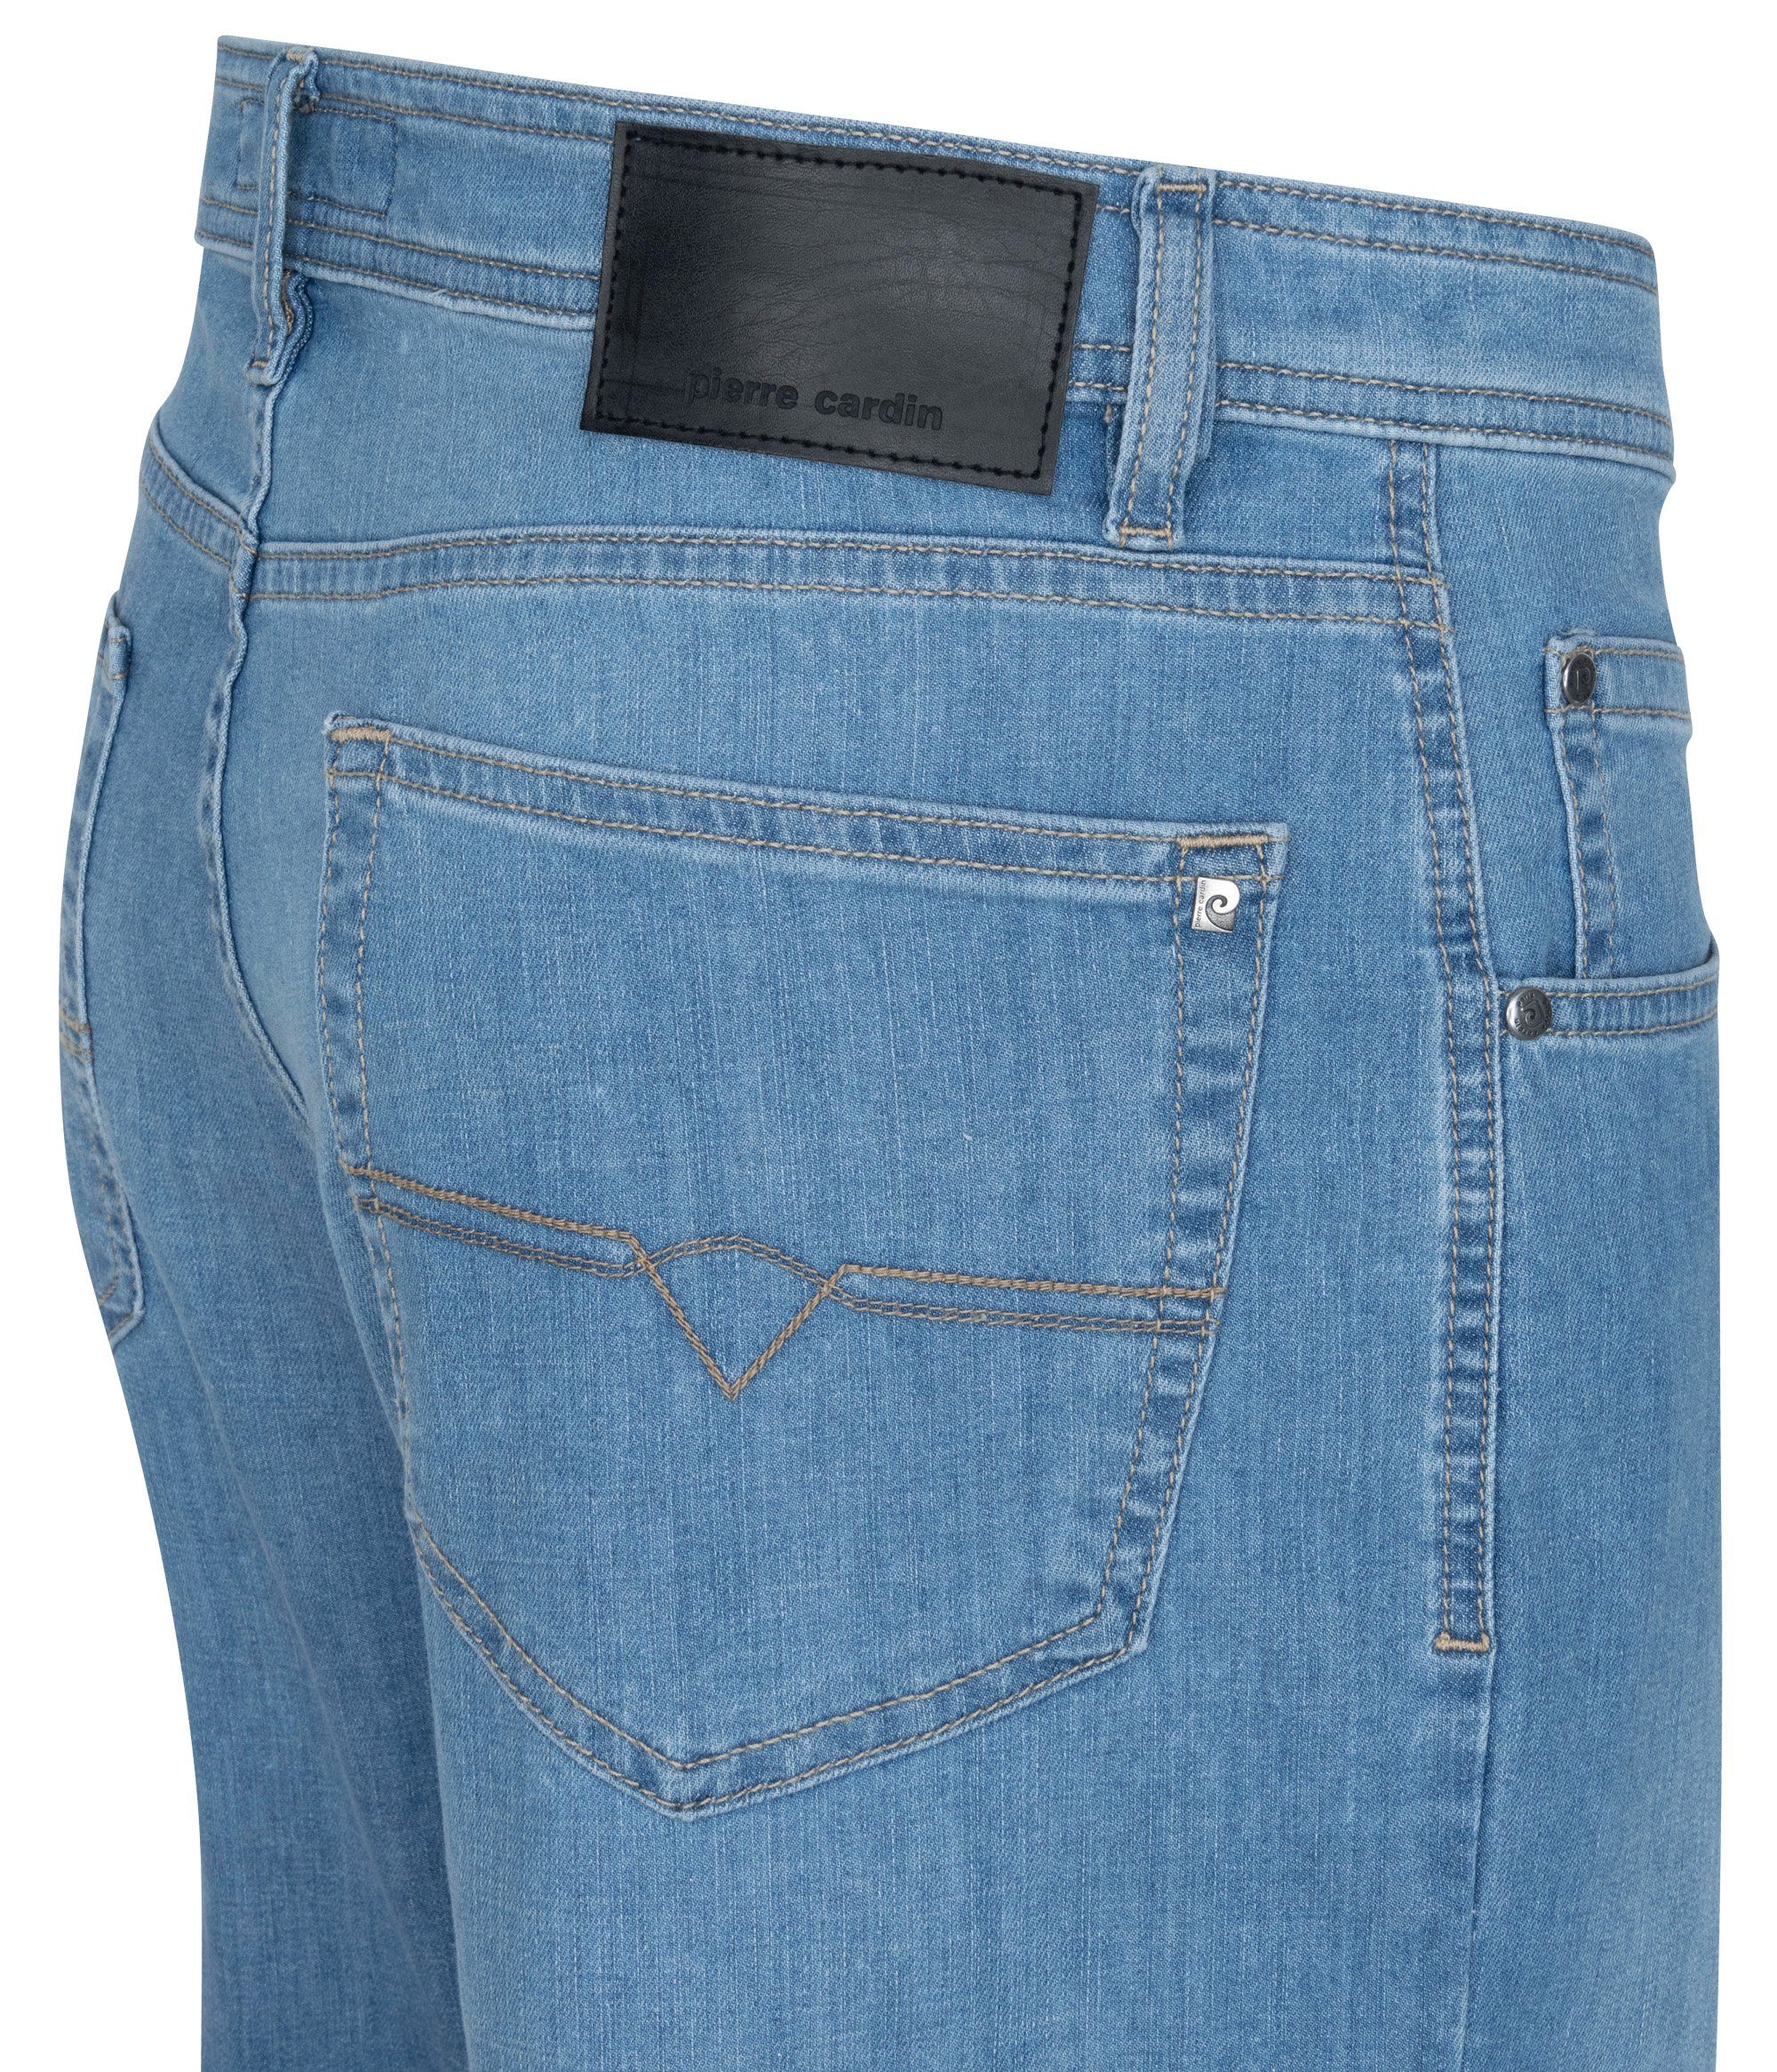 DIJON 32310 Air 5-Pocket-Jeans blue Pierre light Touch 7731.6842 used - CARDIN Cardin PIERRE